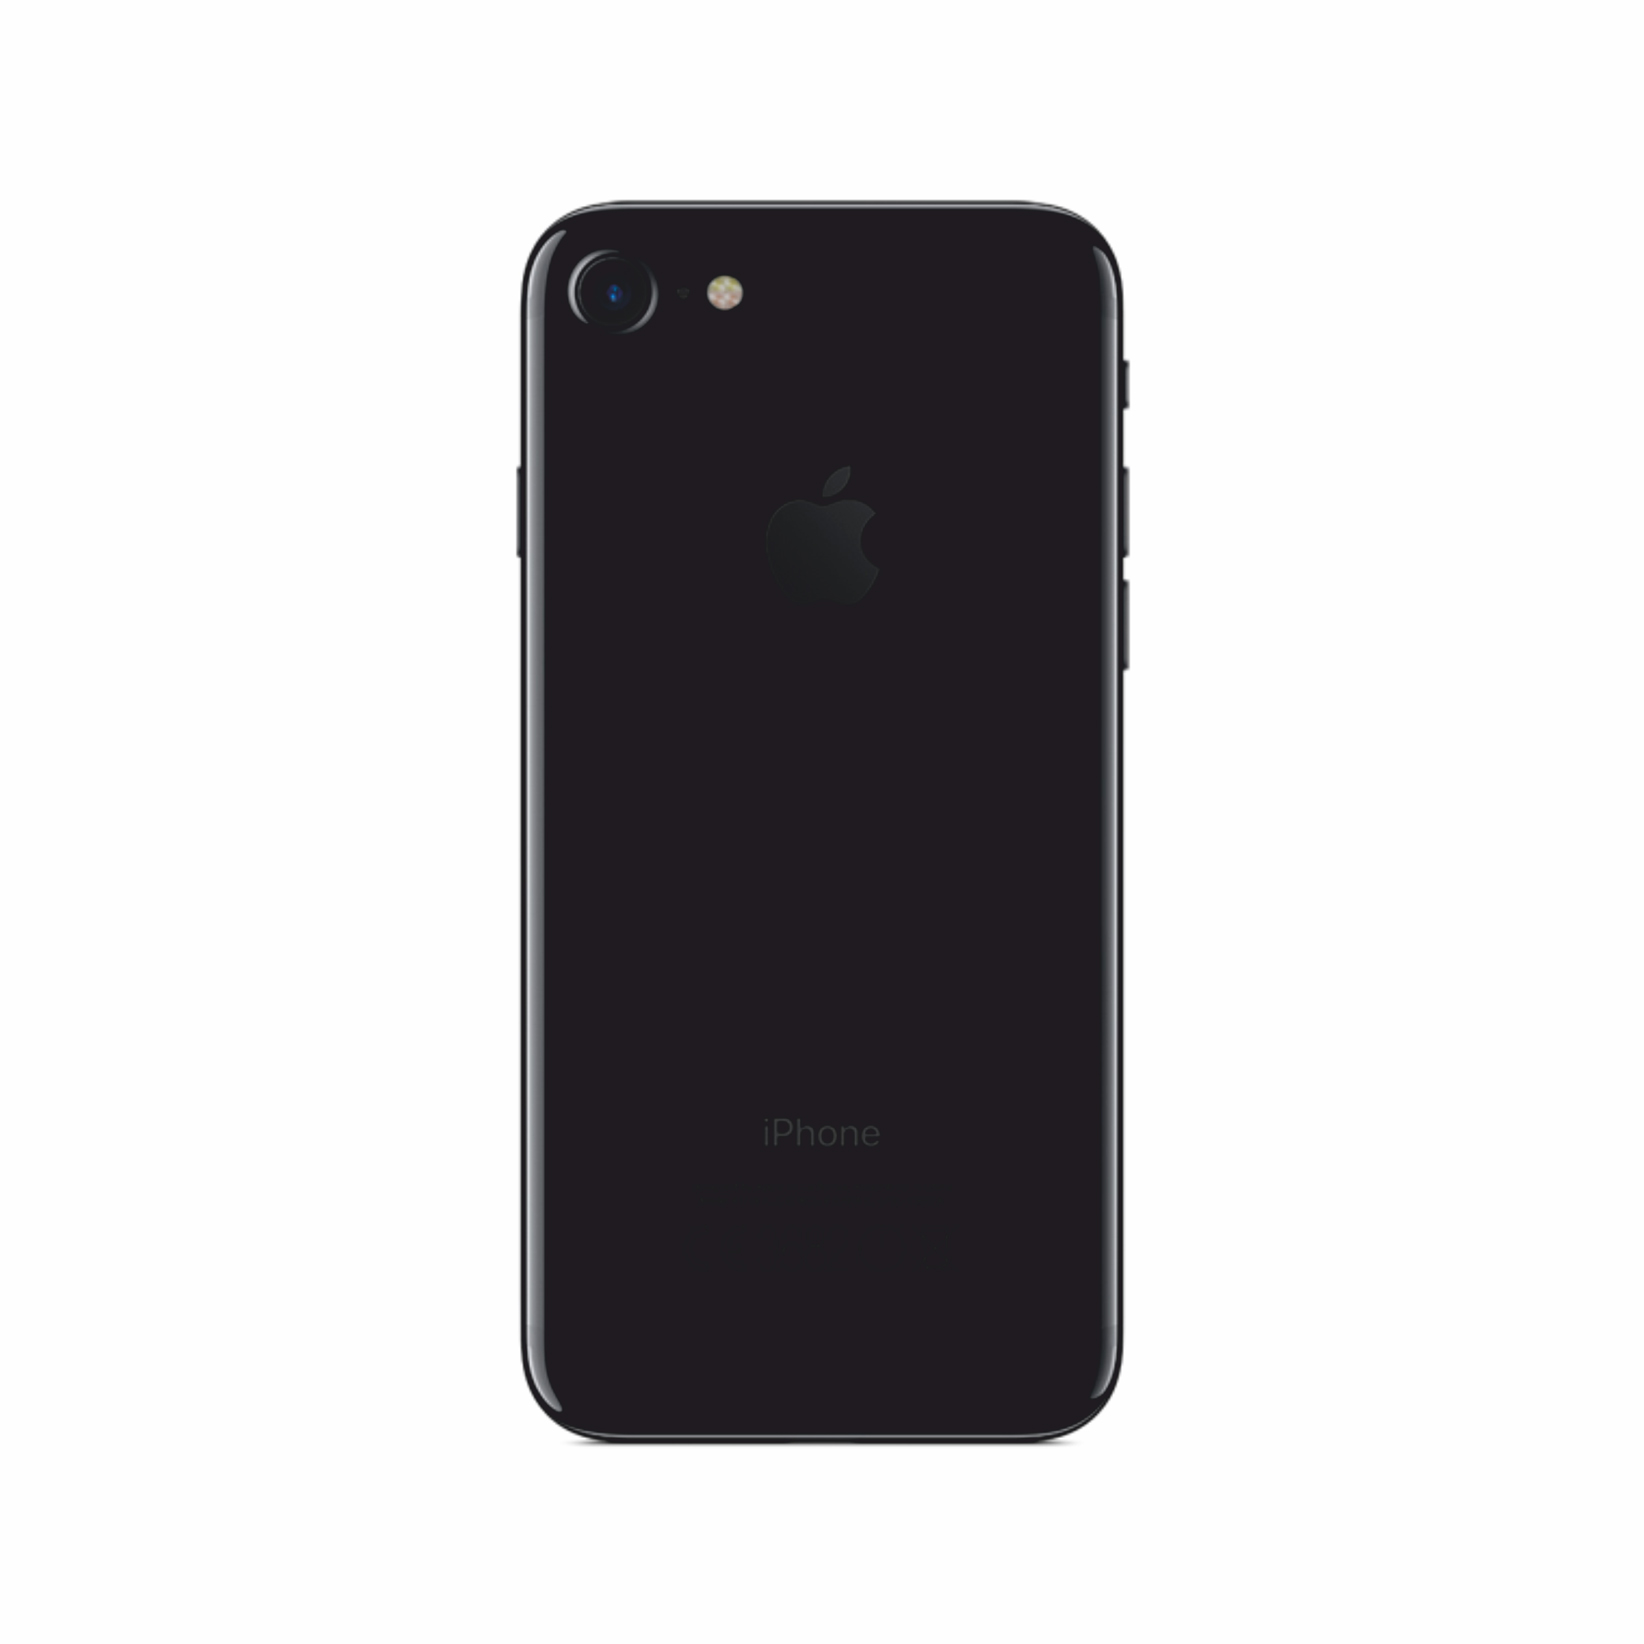 iphone 7 black 32gb